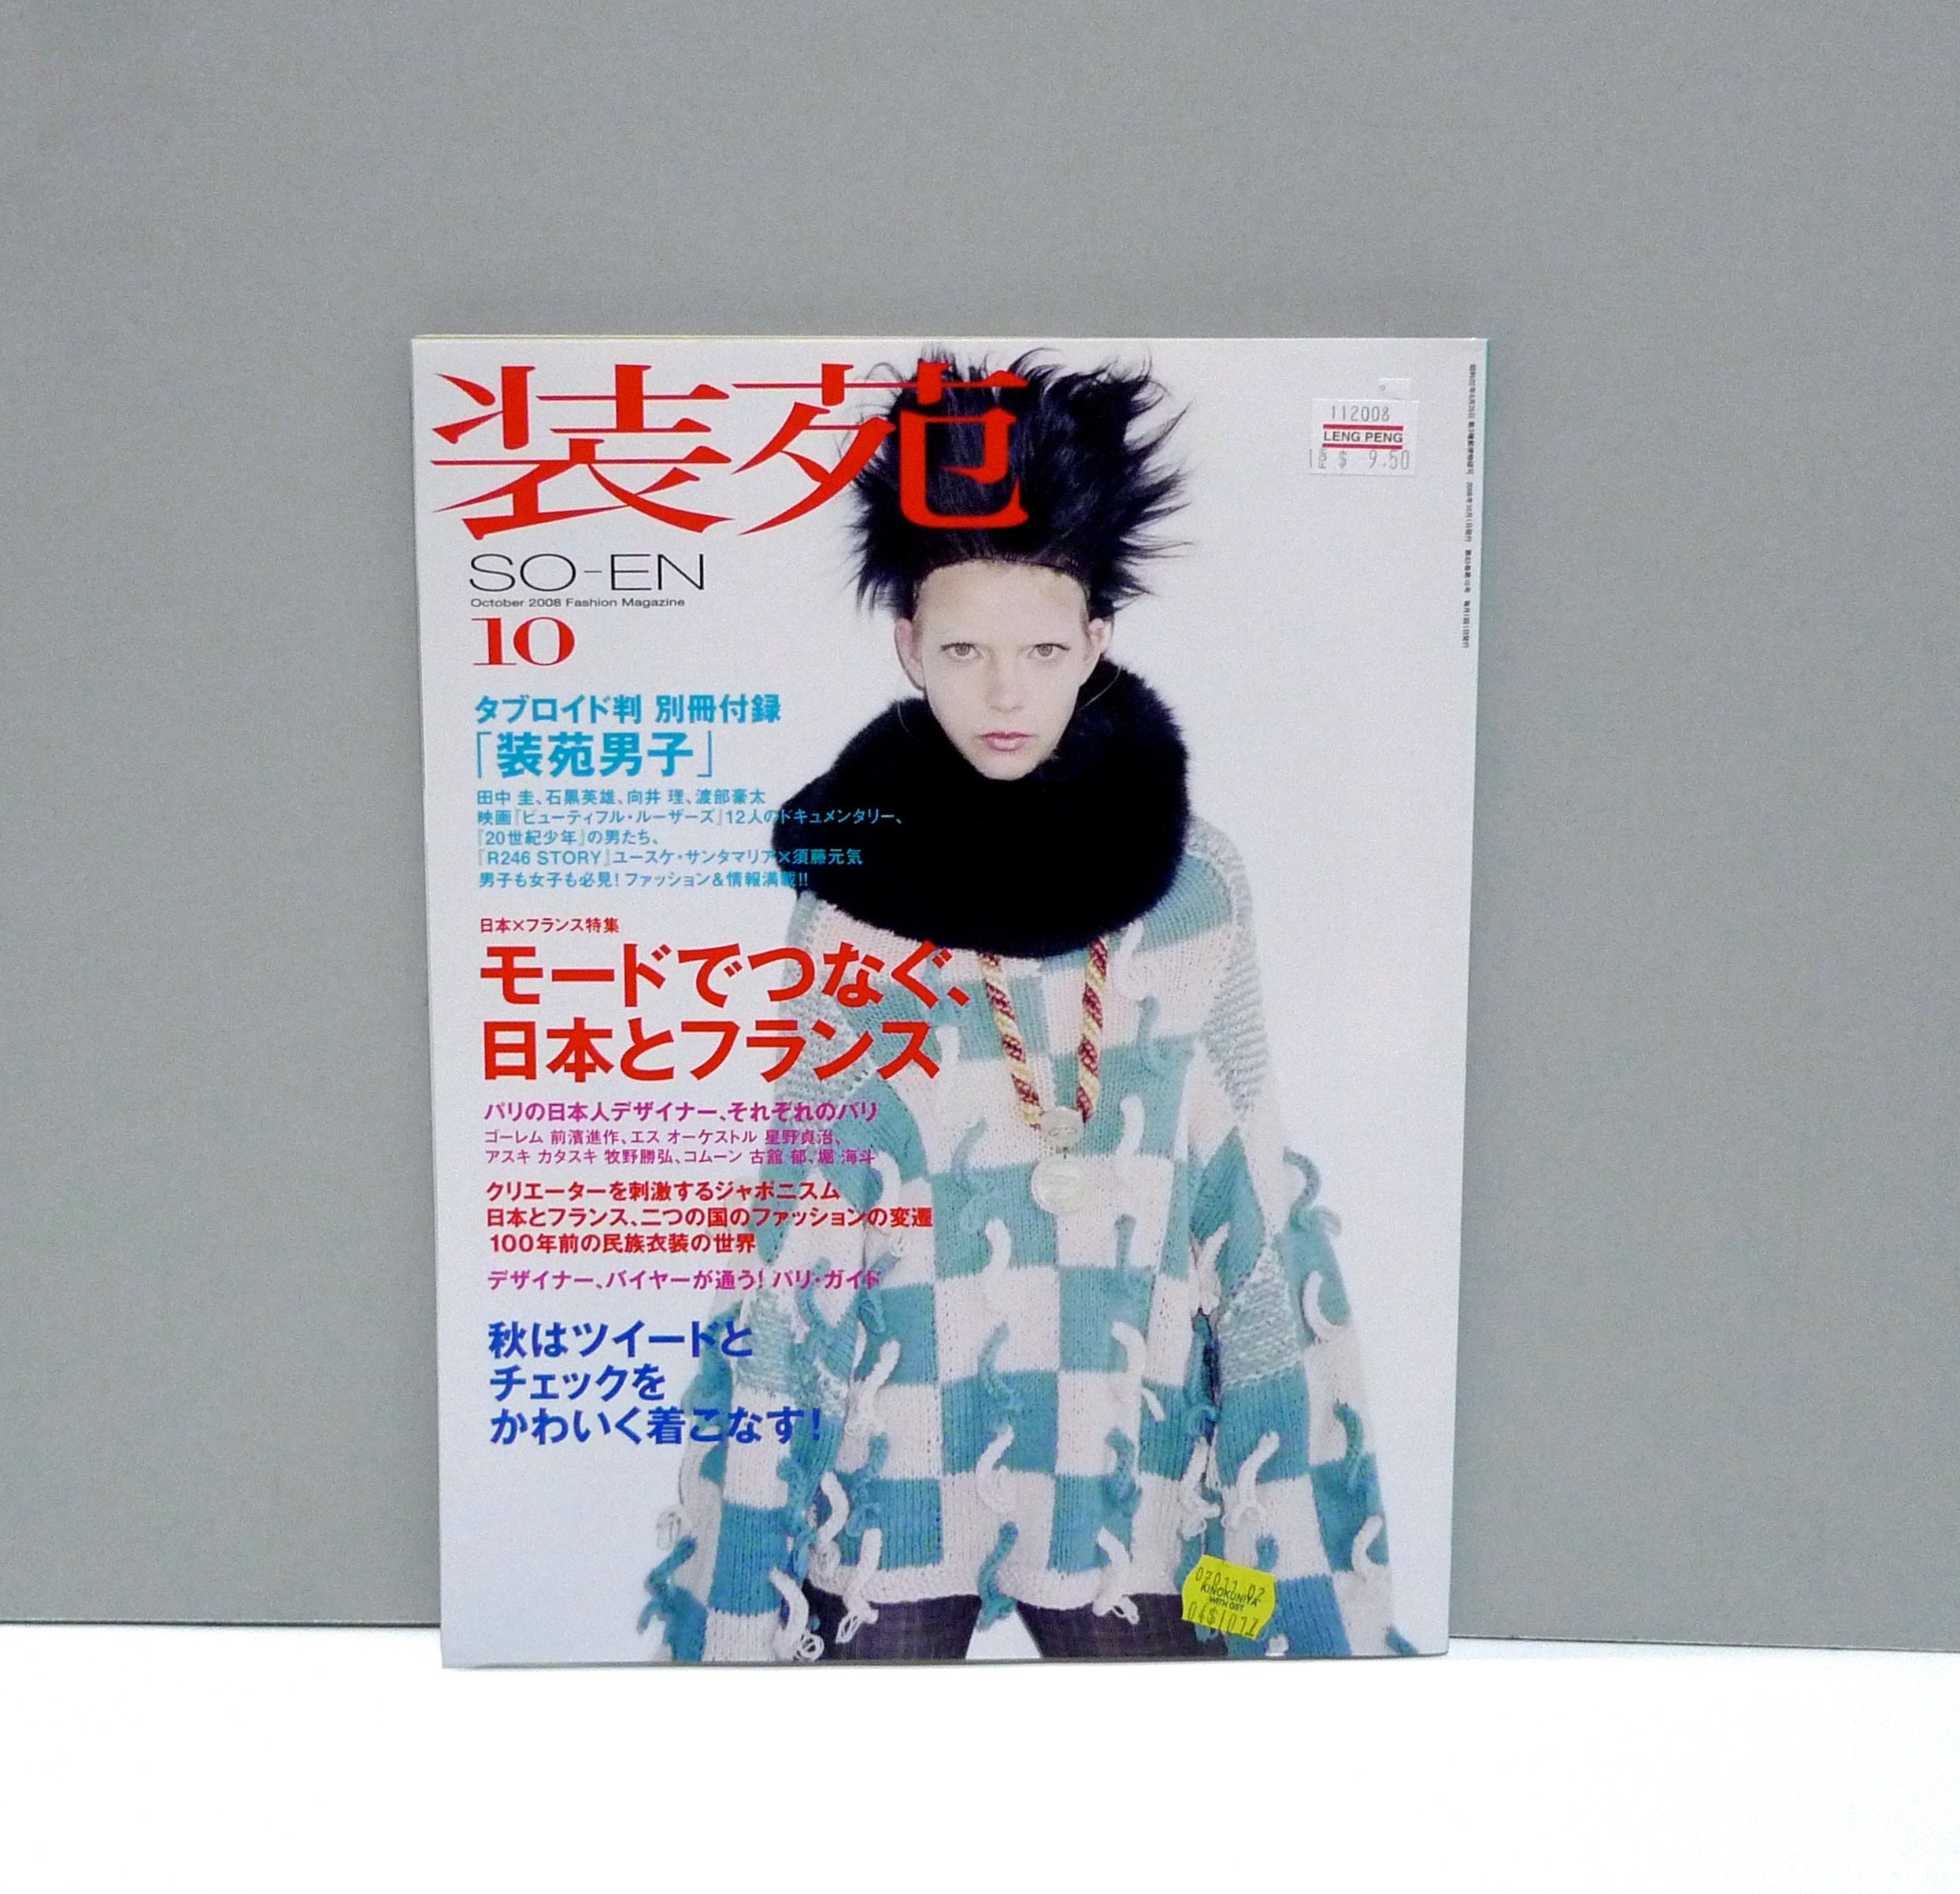 So En Magazine / Japanese Soen World of Fashion Magazine With